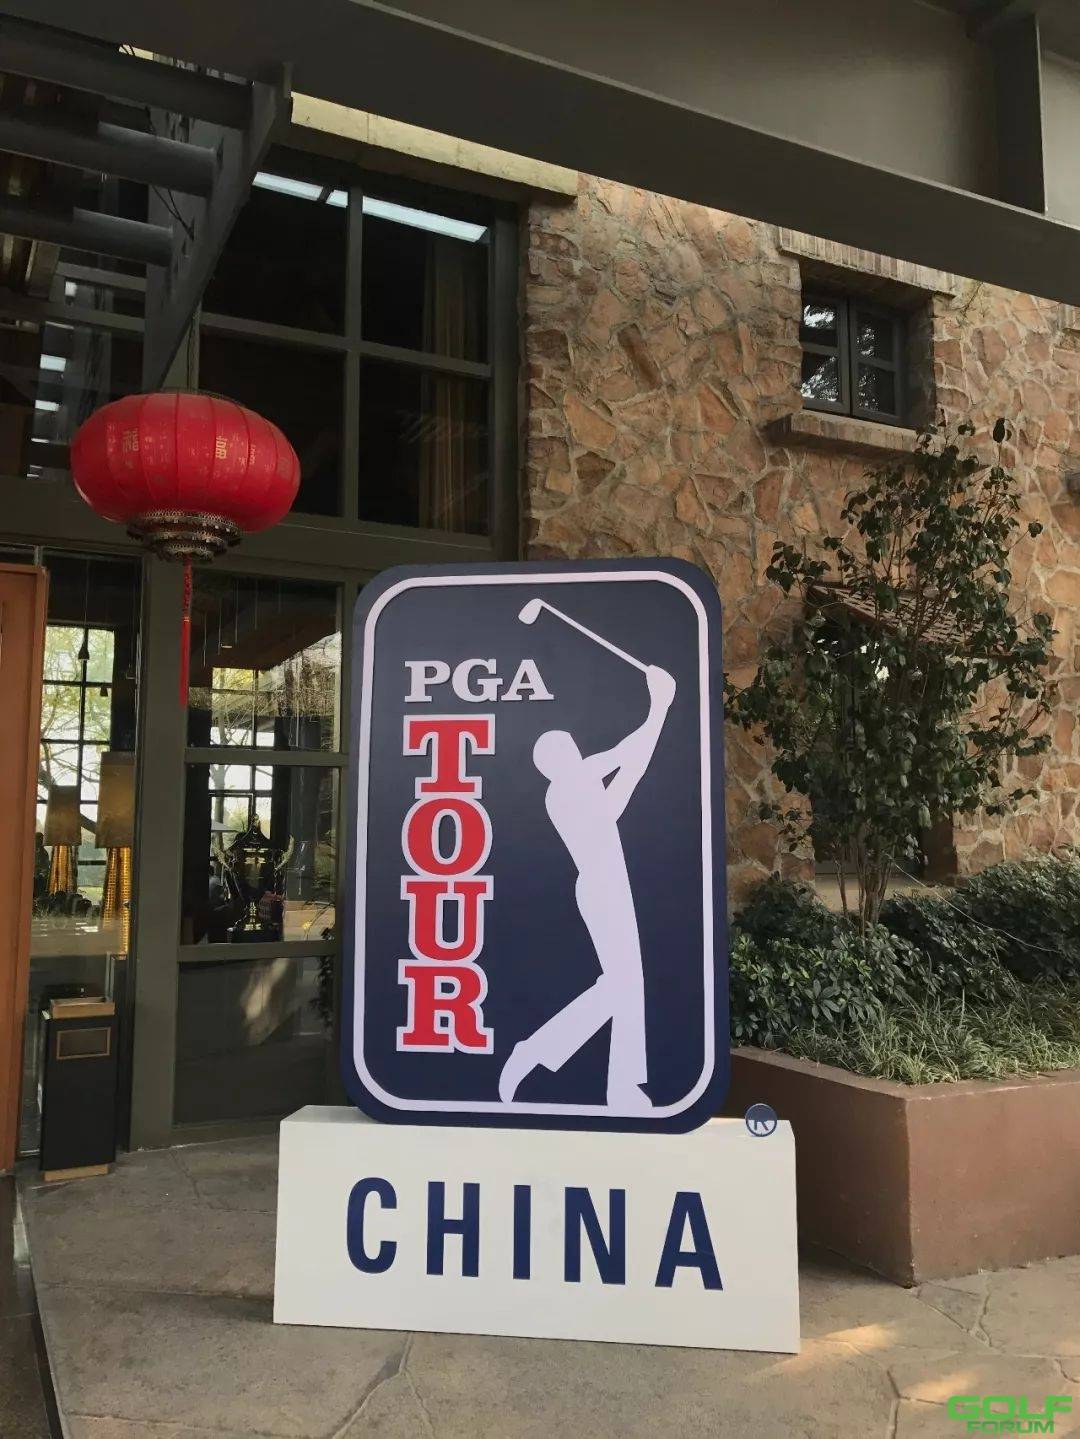 2018美巡系列赛-中国-成都锦标赛，您想知道的热点都在这里了！ ...